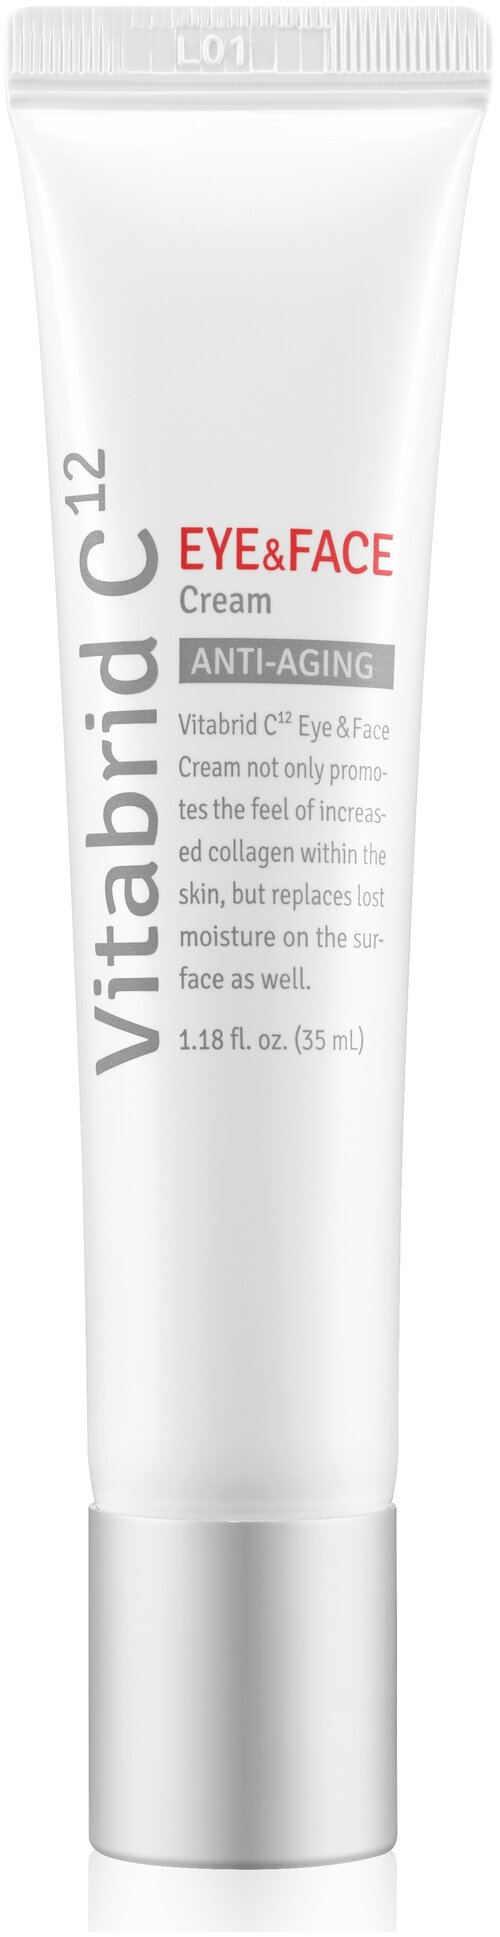 Универсальный крем для лица и глаз Vitabrid C12 Eye Face